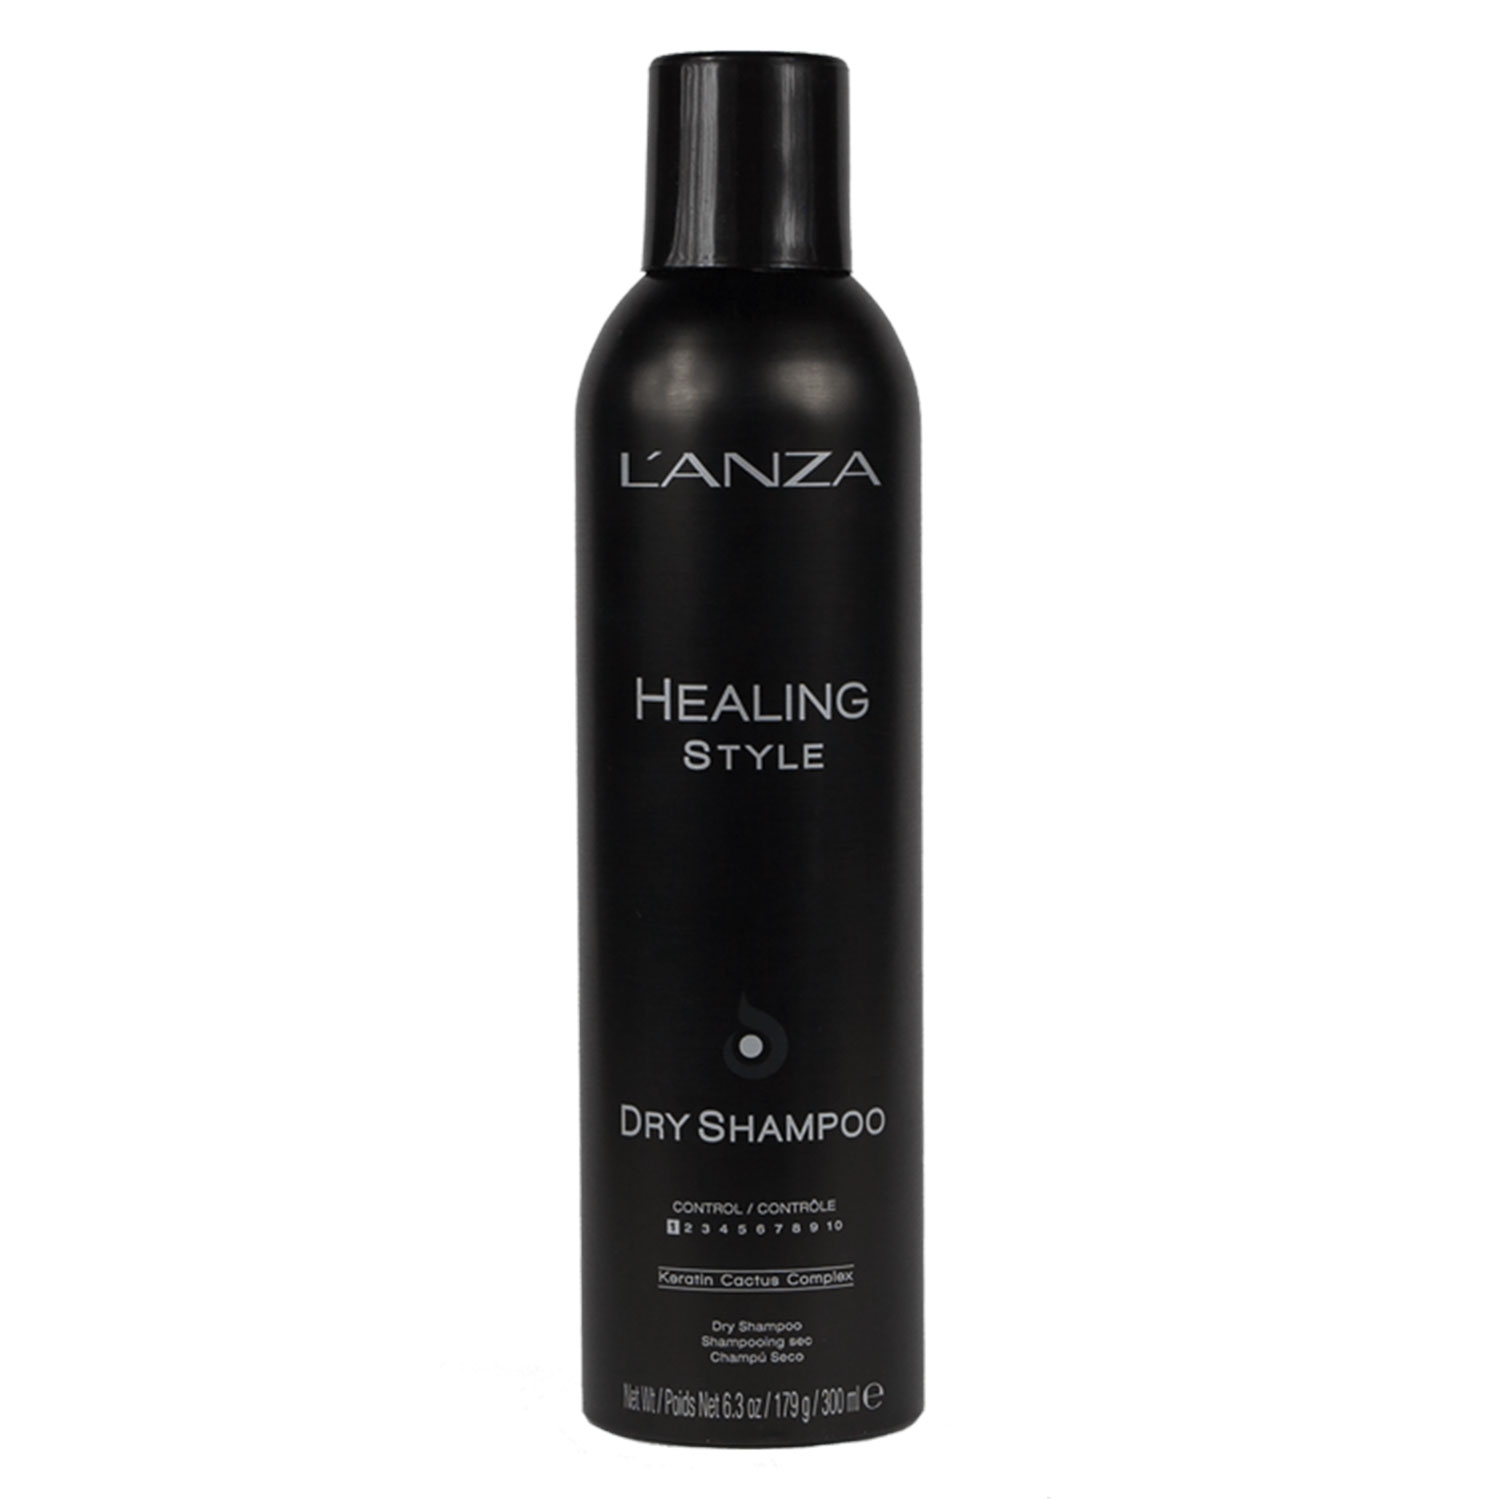 Produktbild von Healing Style - Dry Shampoo